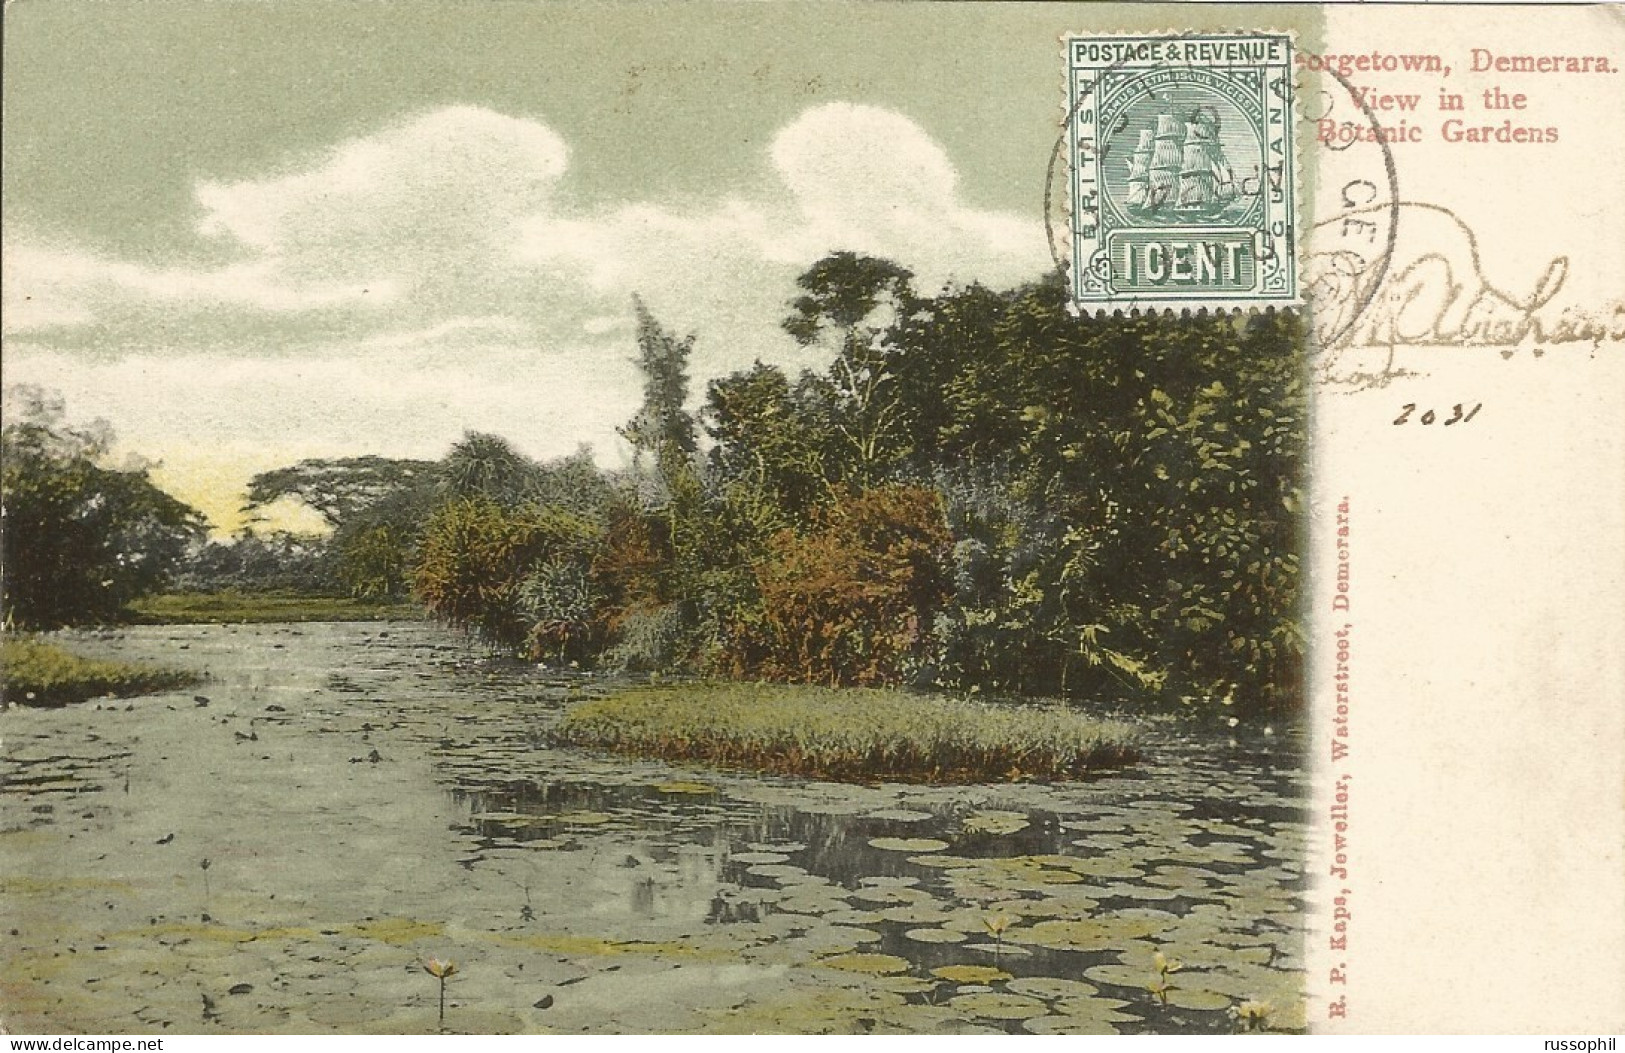 GUYANA - BRITISH GUYANA - GEORGETOWN, DEMERARA. VIEW IN THE BOTANIC GARDENS - ED. KAPS - 1906 - Guyana (antigua Guayana Británica)